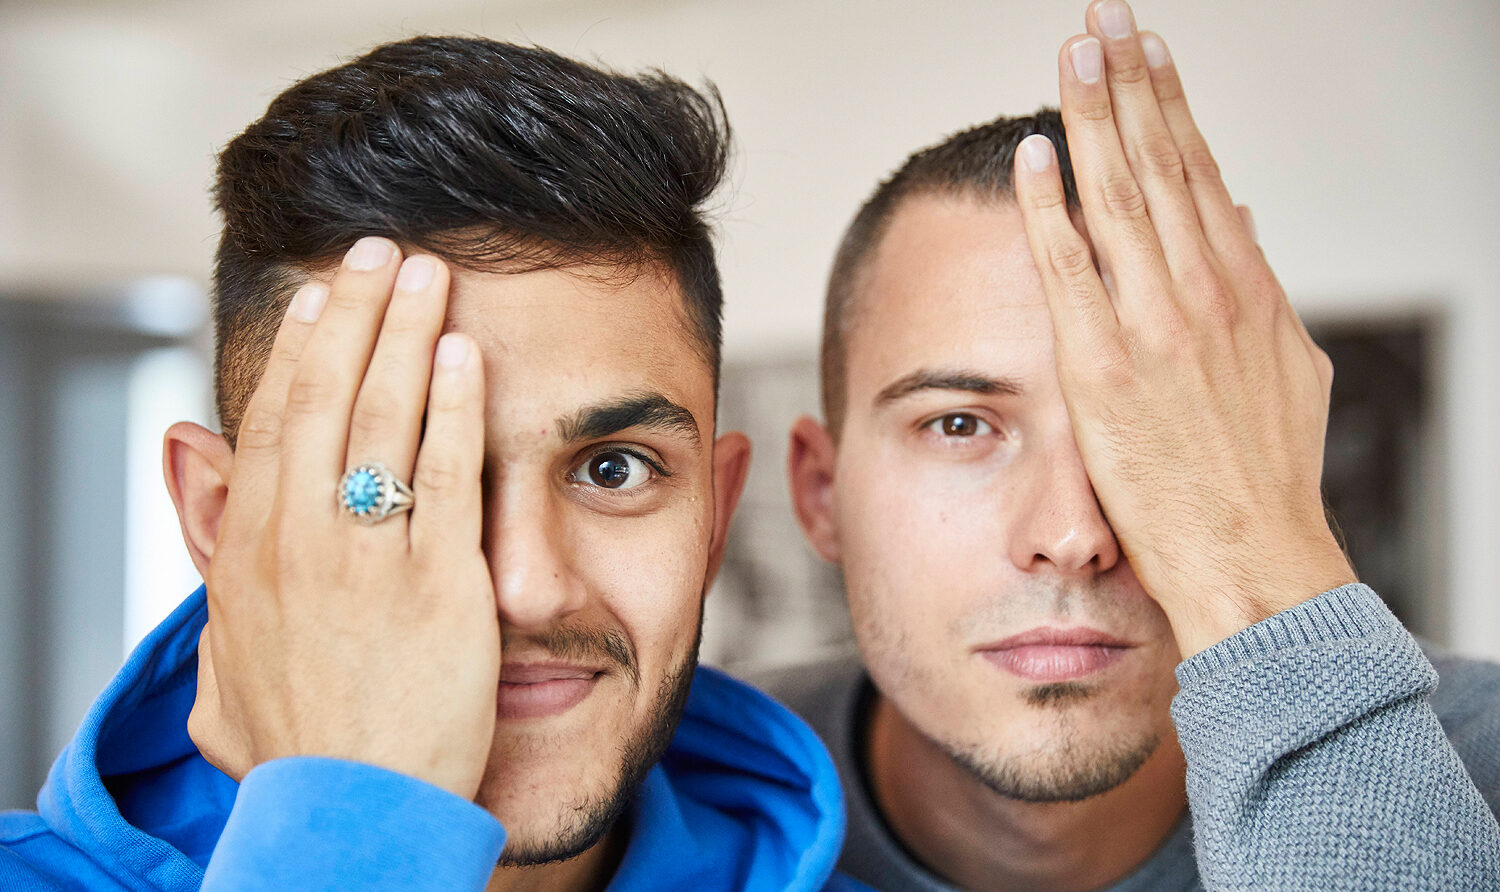 Foto: Zwei junge Männer, die sich jeweils ein Auge mit der Hand zuhalten